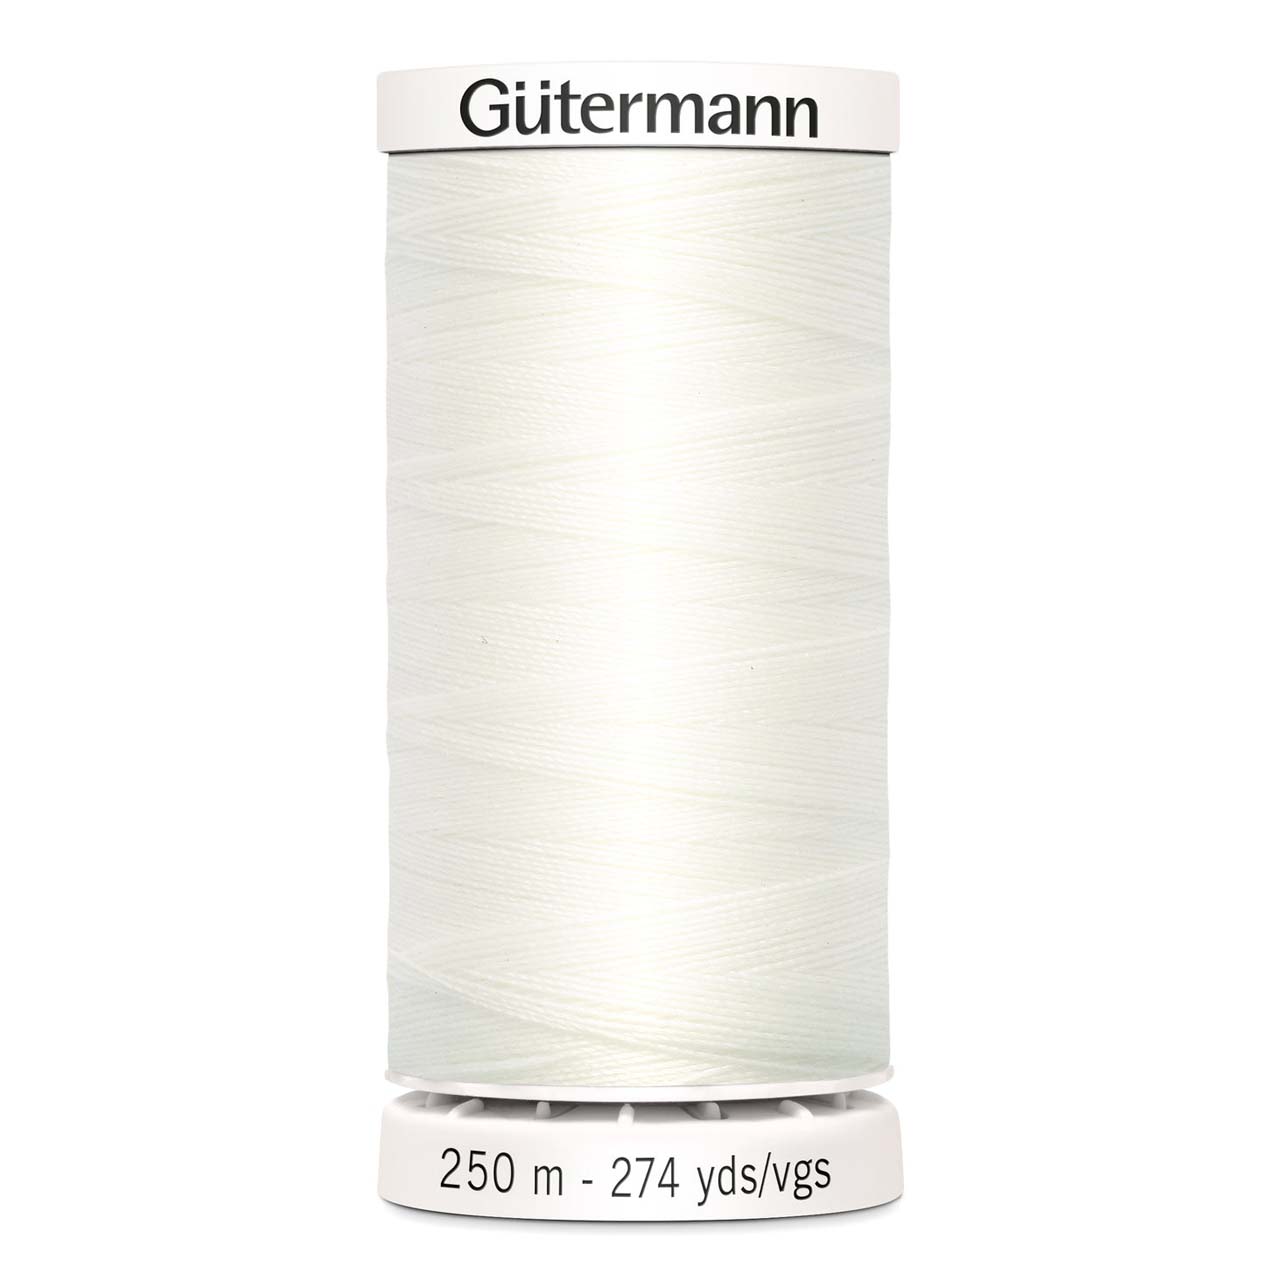 gutermann thread 111 silk white sewing thread 250 metres